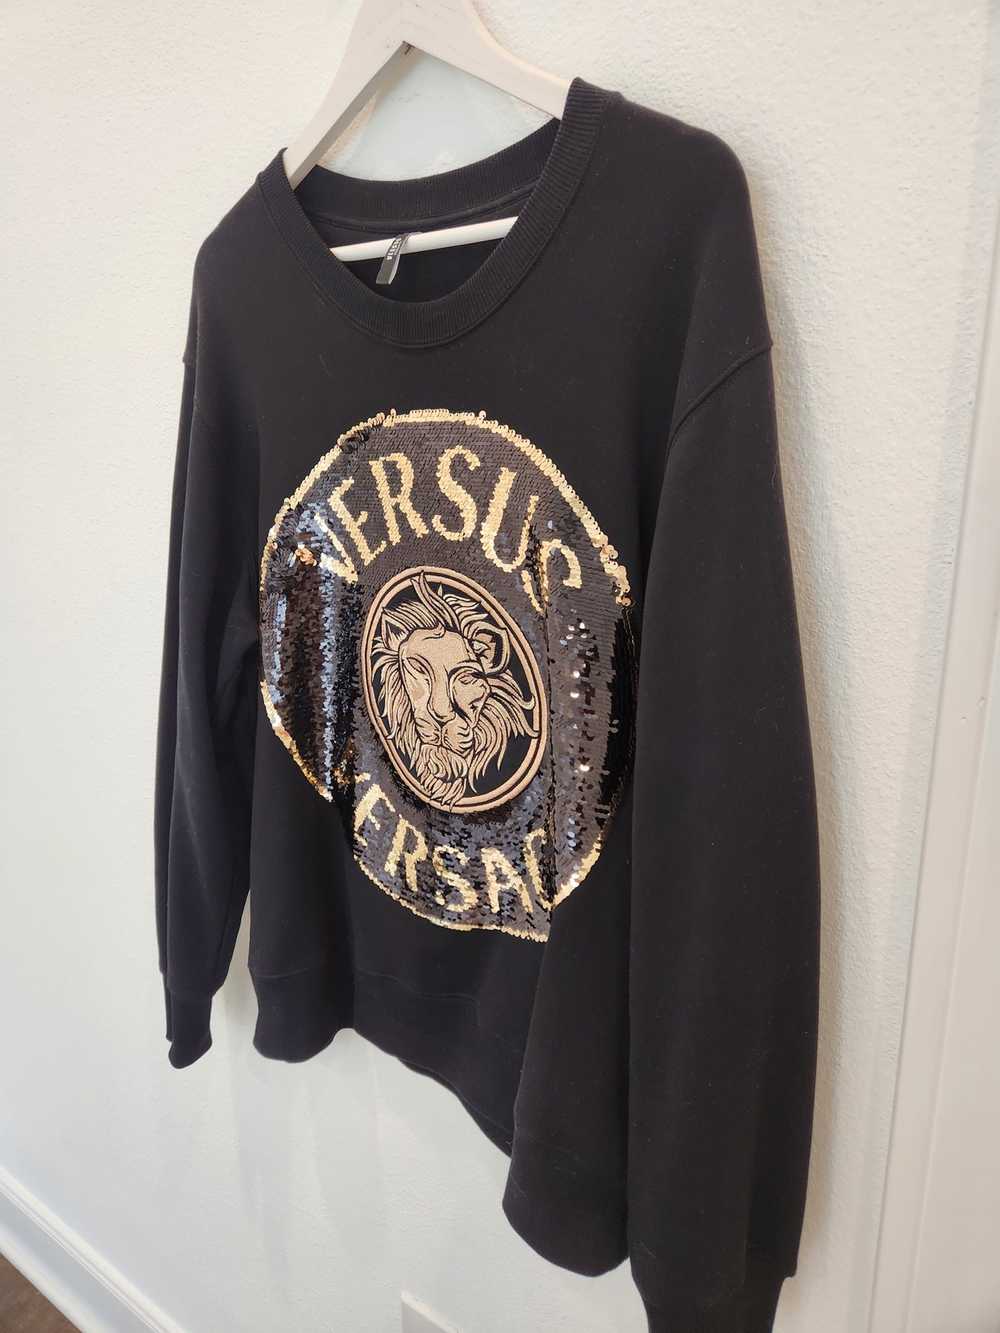 Versus Versace Versus Versace Sequin sweater - image 9